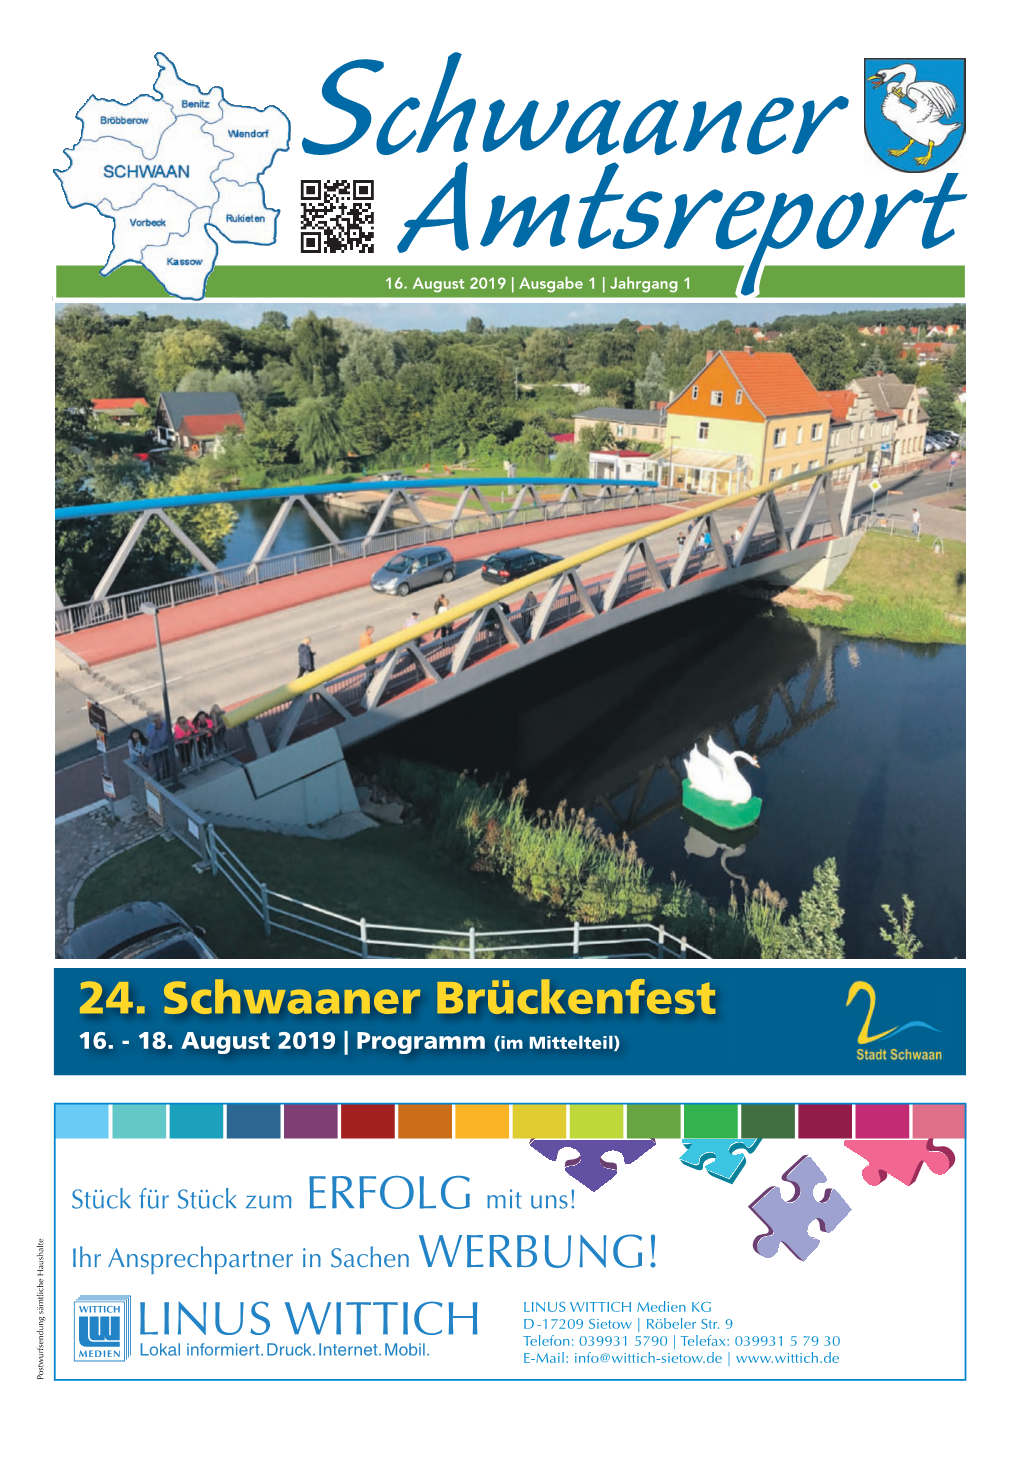 24. Schwaaner Brückenfest 16